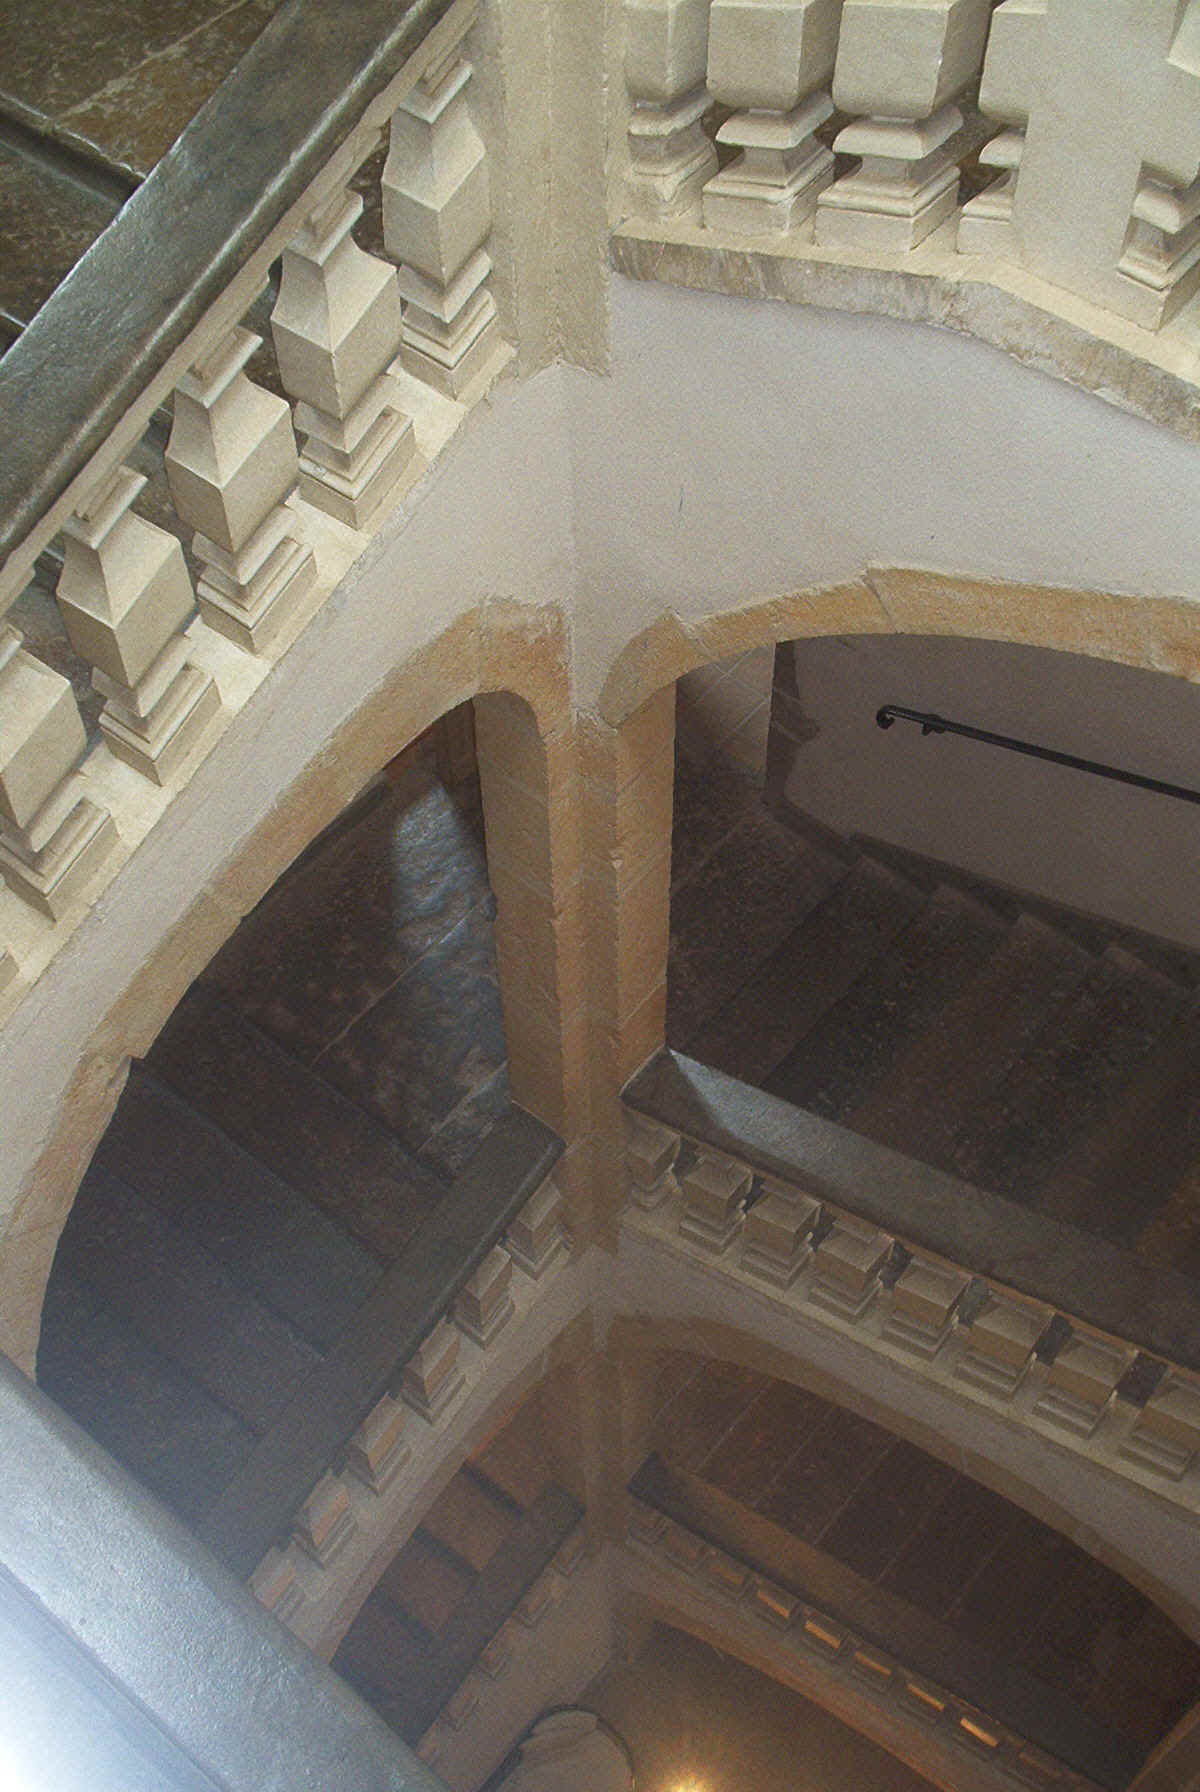 Vue du haut vers le bas de l'escalier constuit par les Guignard au château de Saint-Priest.jpg (1181434 bytes)